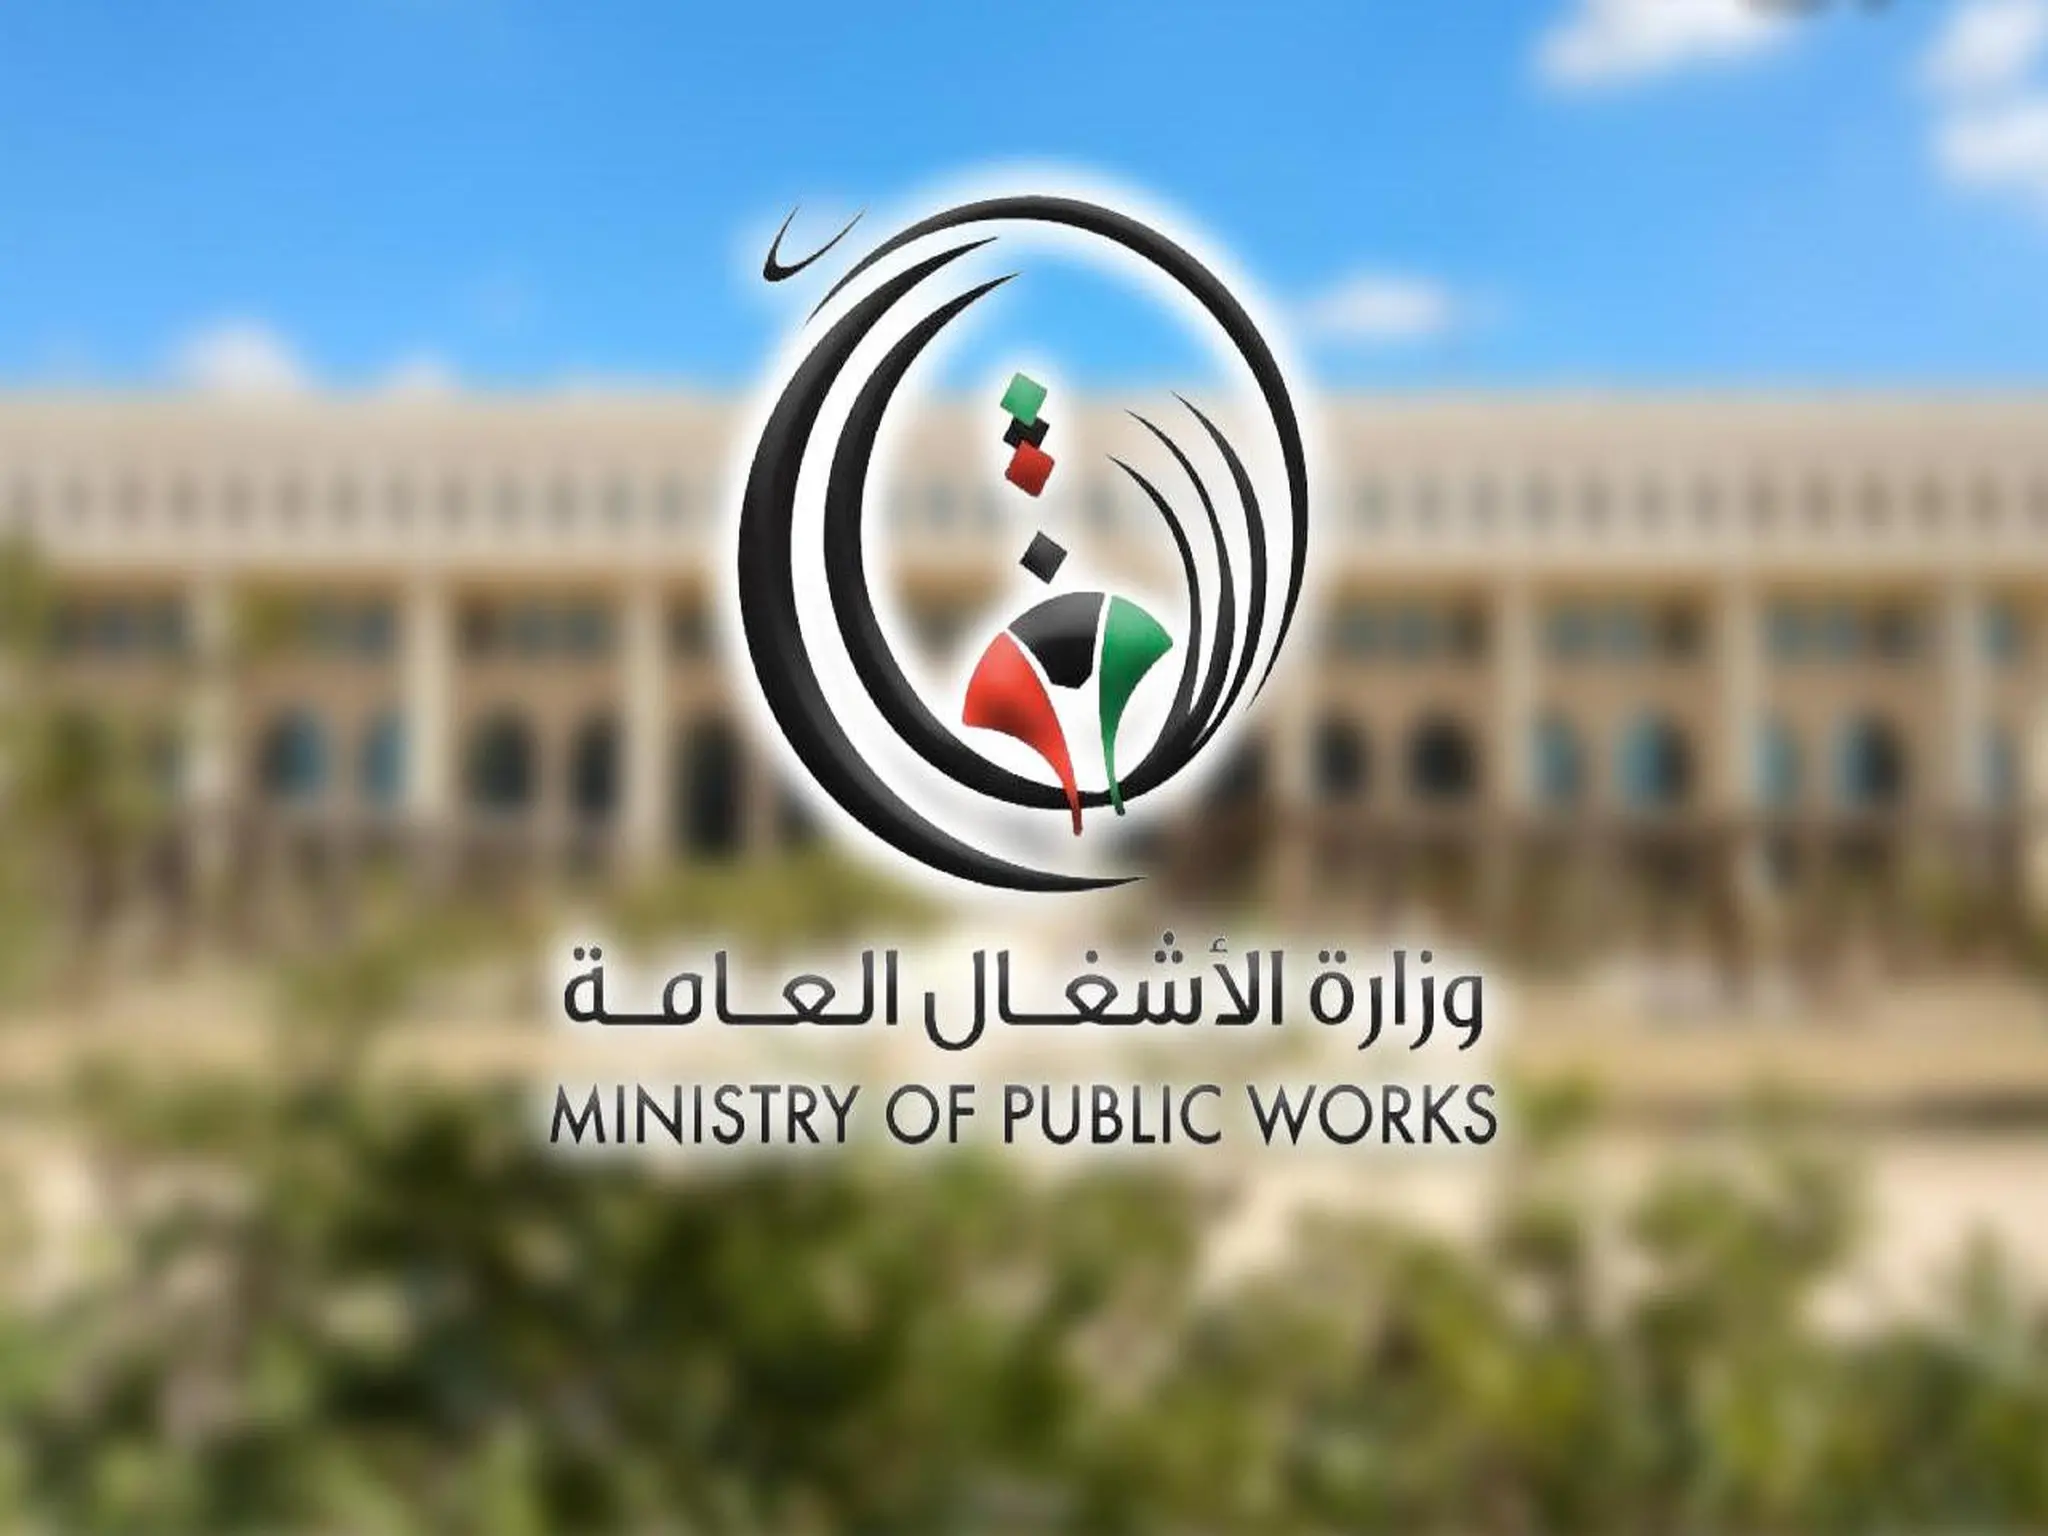 وزارة الأشغال العامة تتأخر فى طرح عدة عقود إنشاء بالكويت